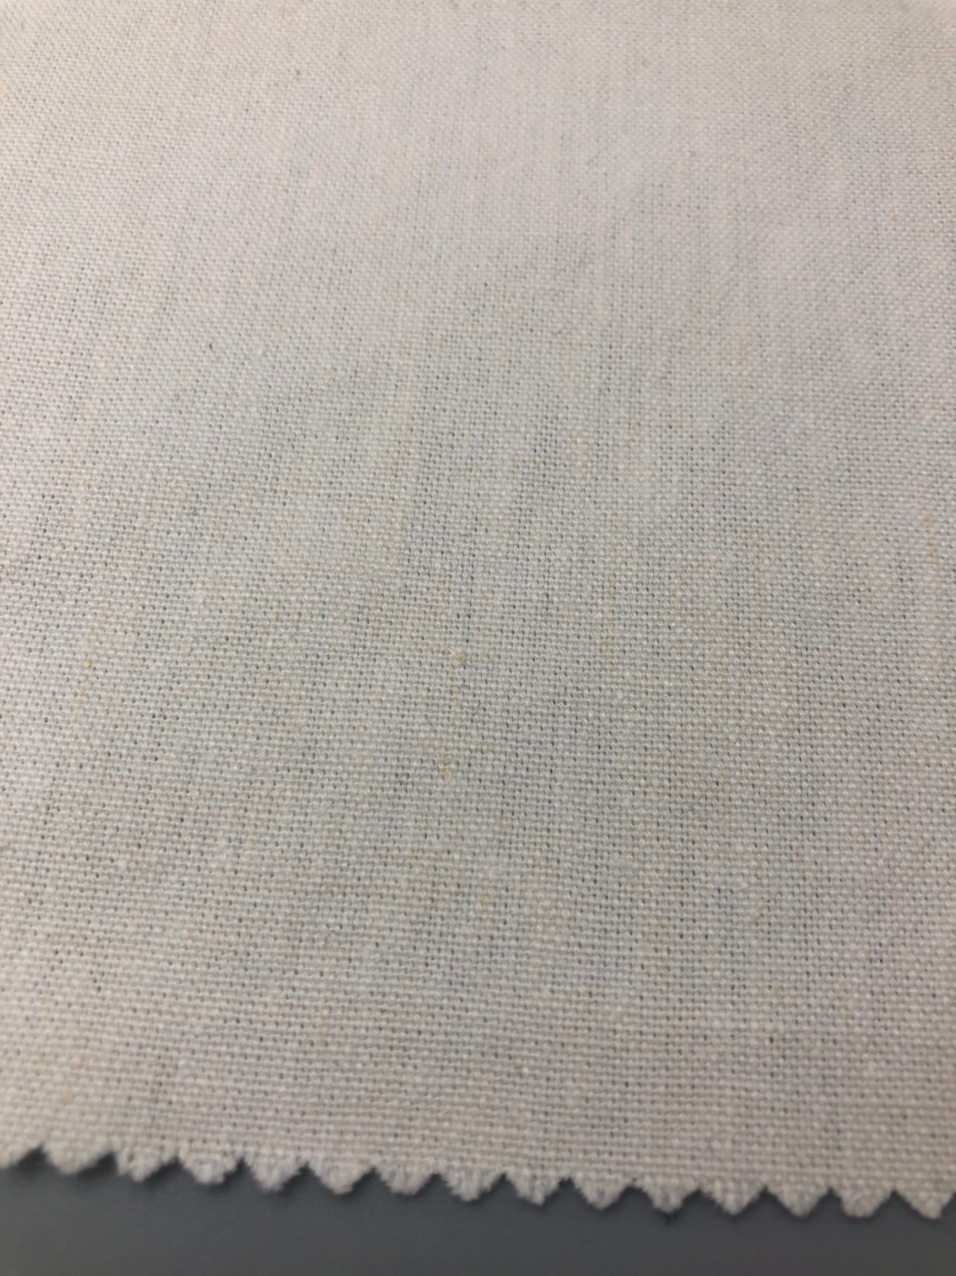 Ткань хлопок с коноплей листок конопли картинка